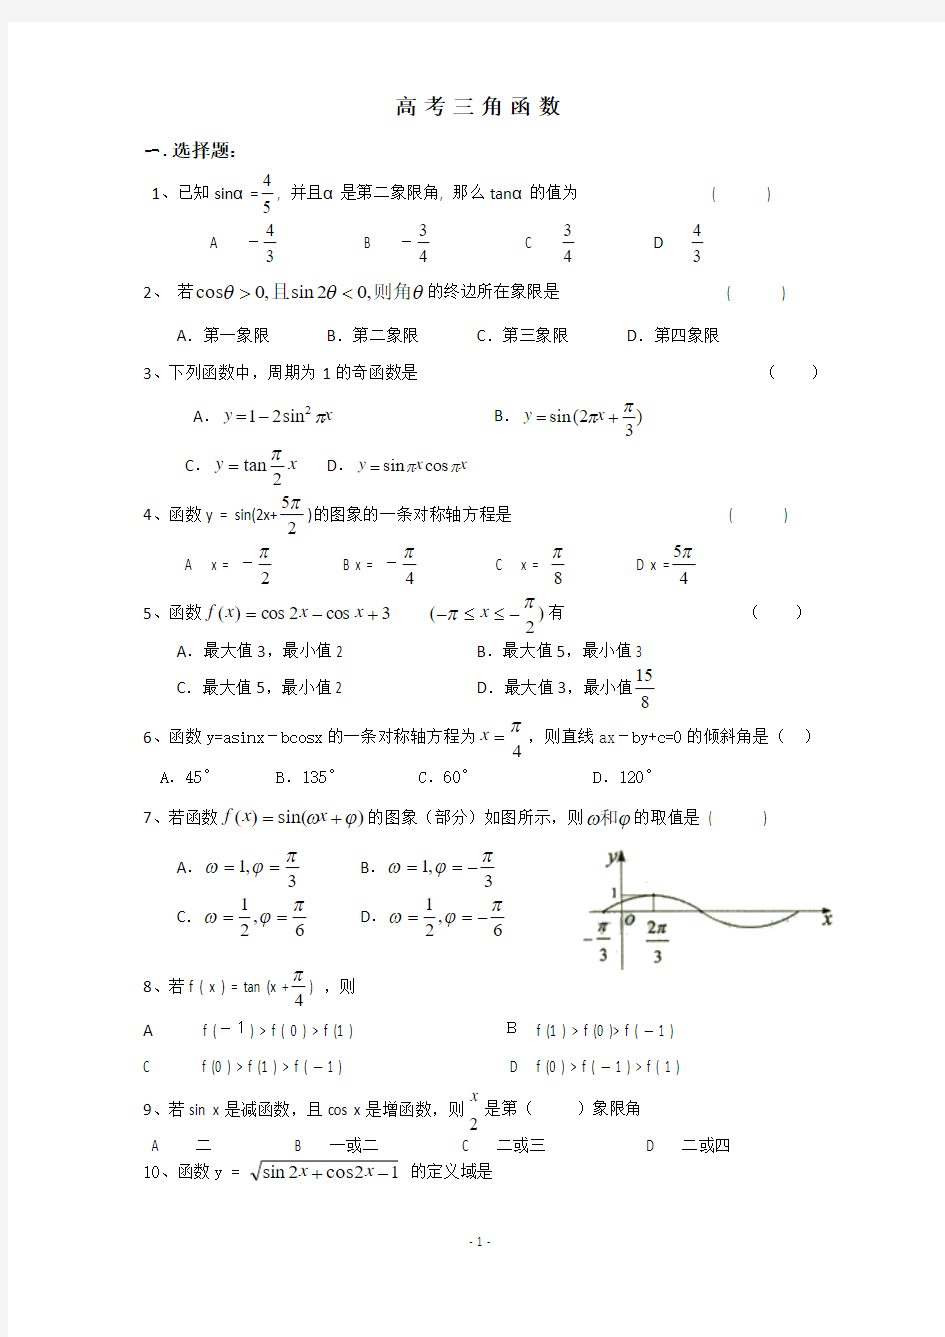 高中文科数学三角函数练习题(附答案)